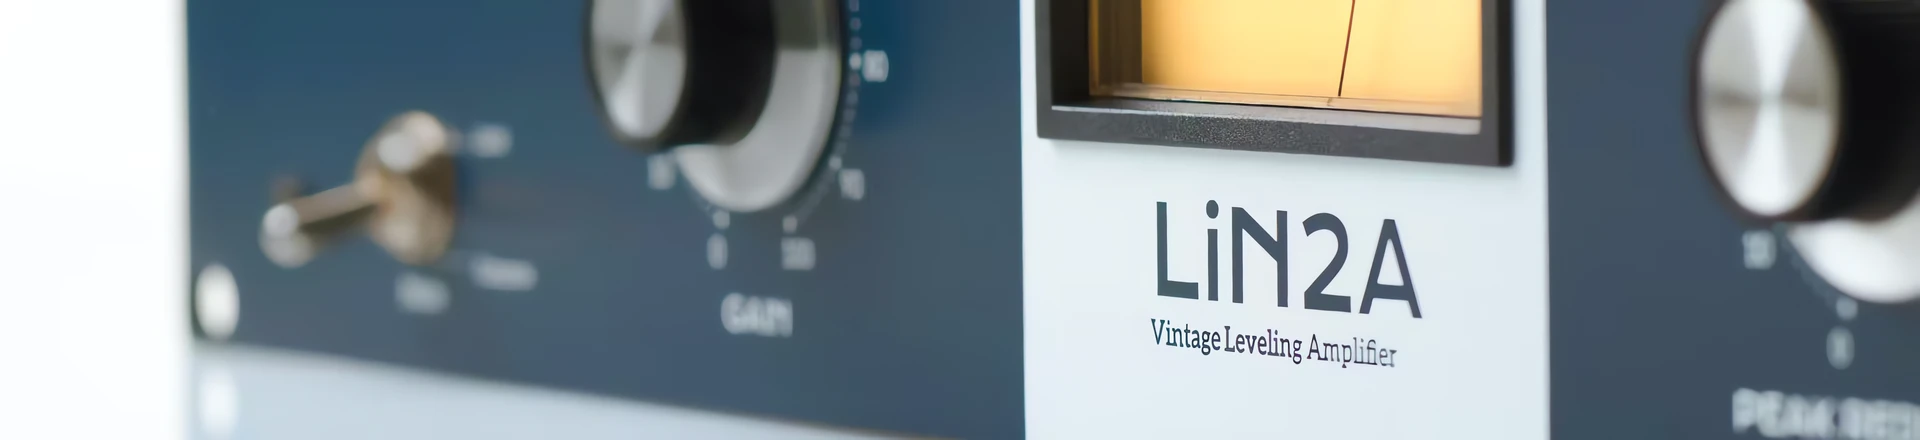 Lindell Audio Lin2A – Nowe wcielenie klasyka